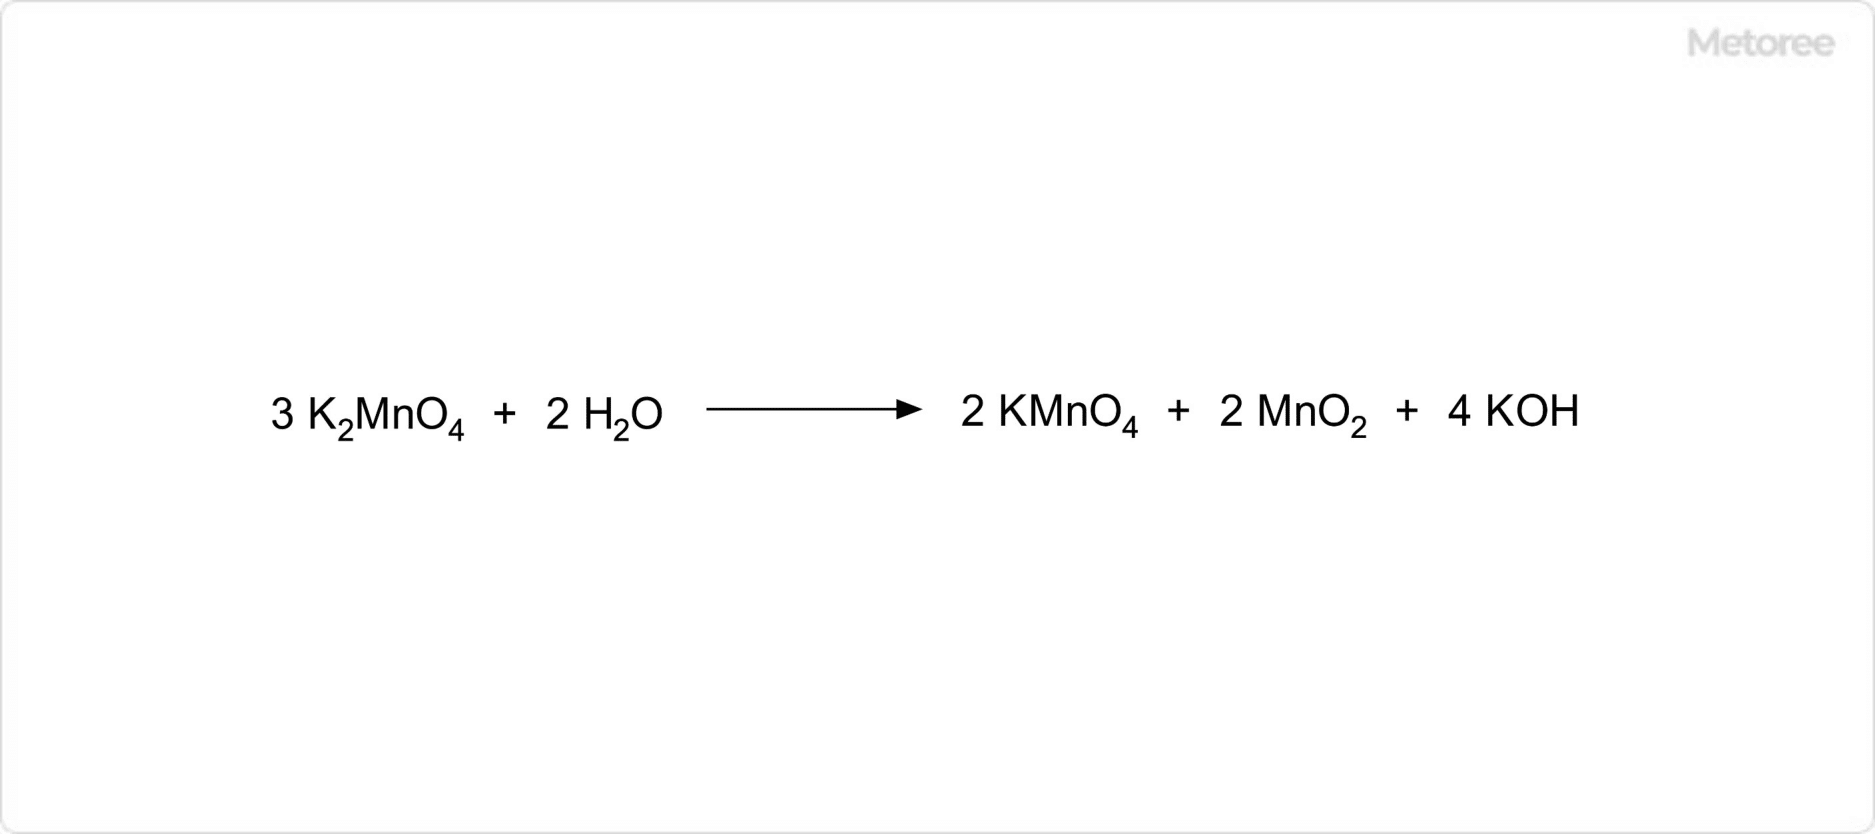 マンガン酸カリウムの化学反応